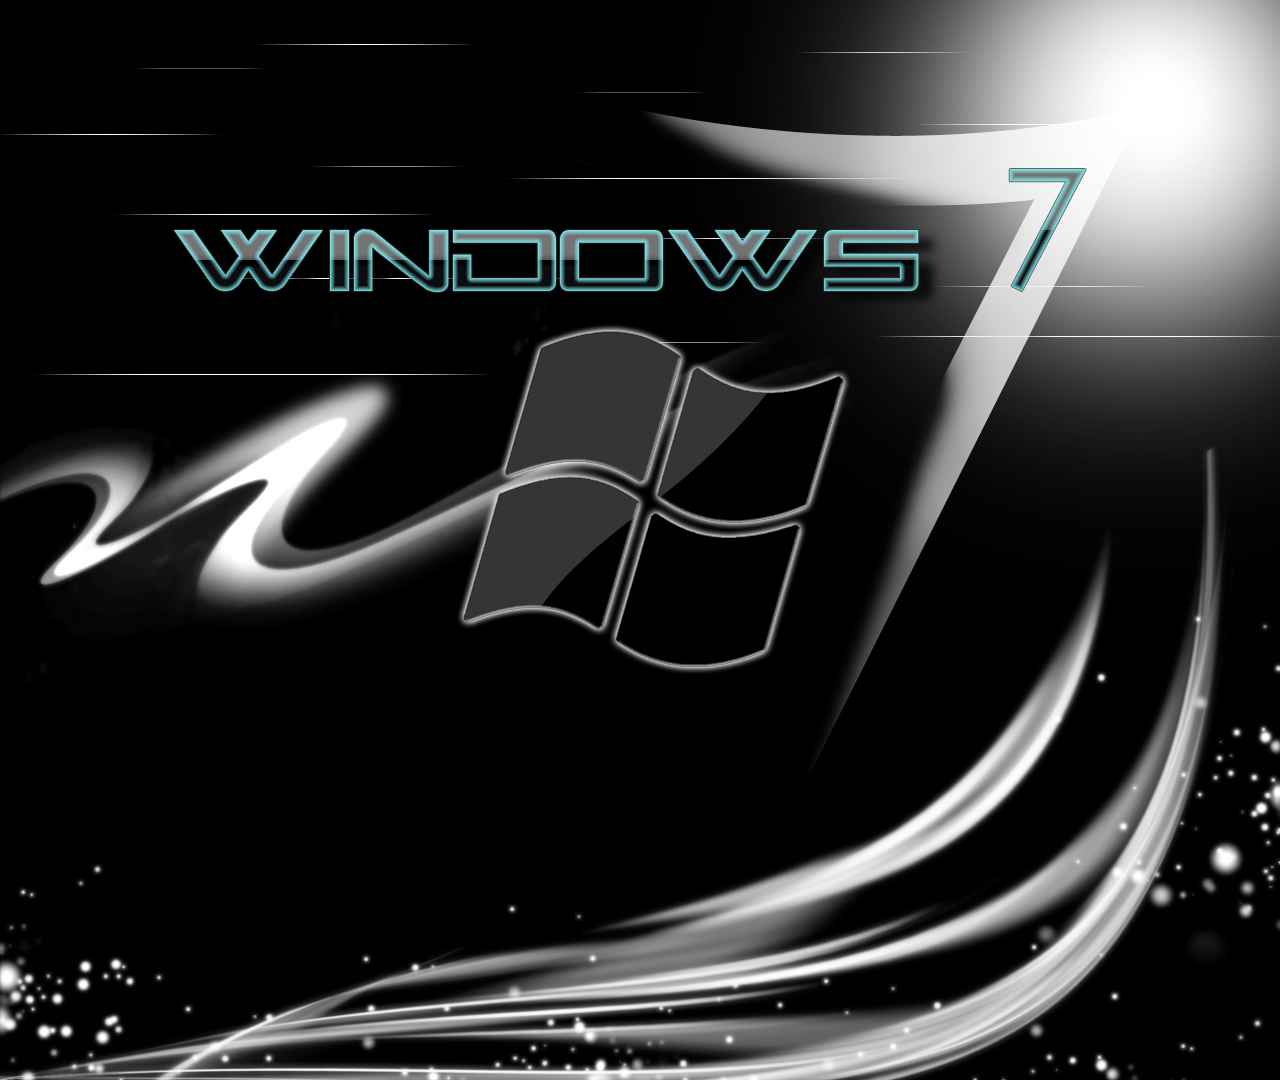 Bạn đang muốn tìm kiếm một hình nền đen cho Windows 7 miễn phí? Hãy truy cập vào trang web của chúng tôi để tải về và trang trí nền desktop của bạn. Hình nền đen sẽ tạo cảm giác tinh tế và sang trọng cho máy tính của bạn.